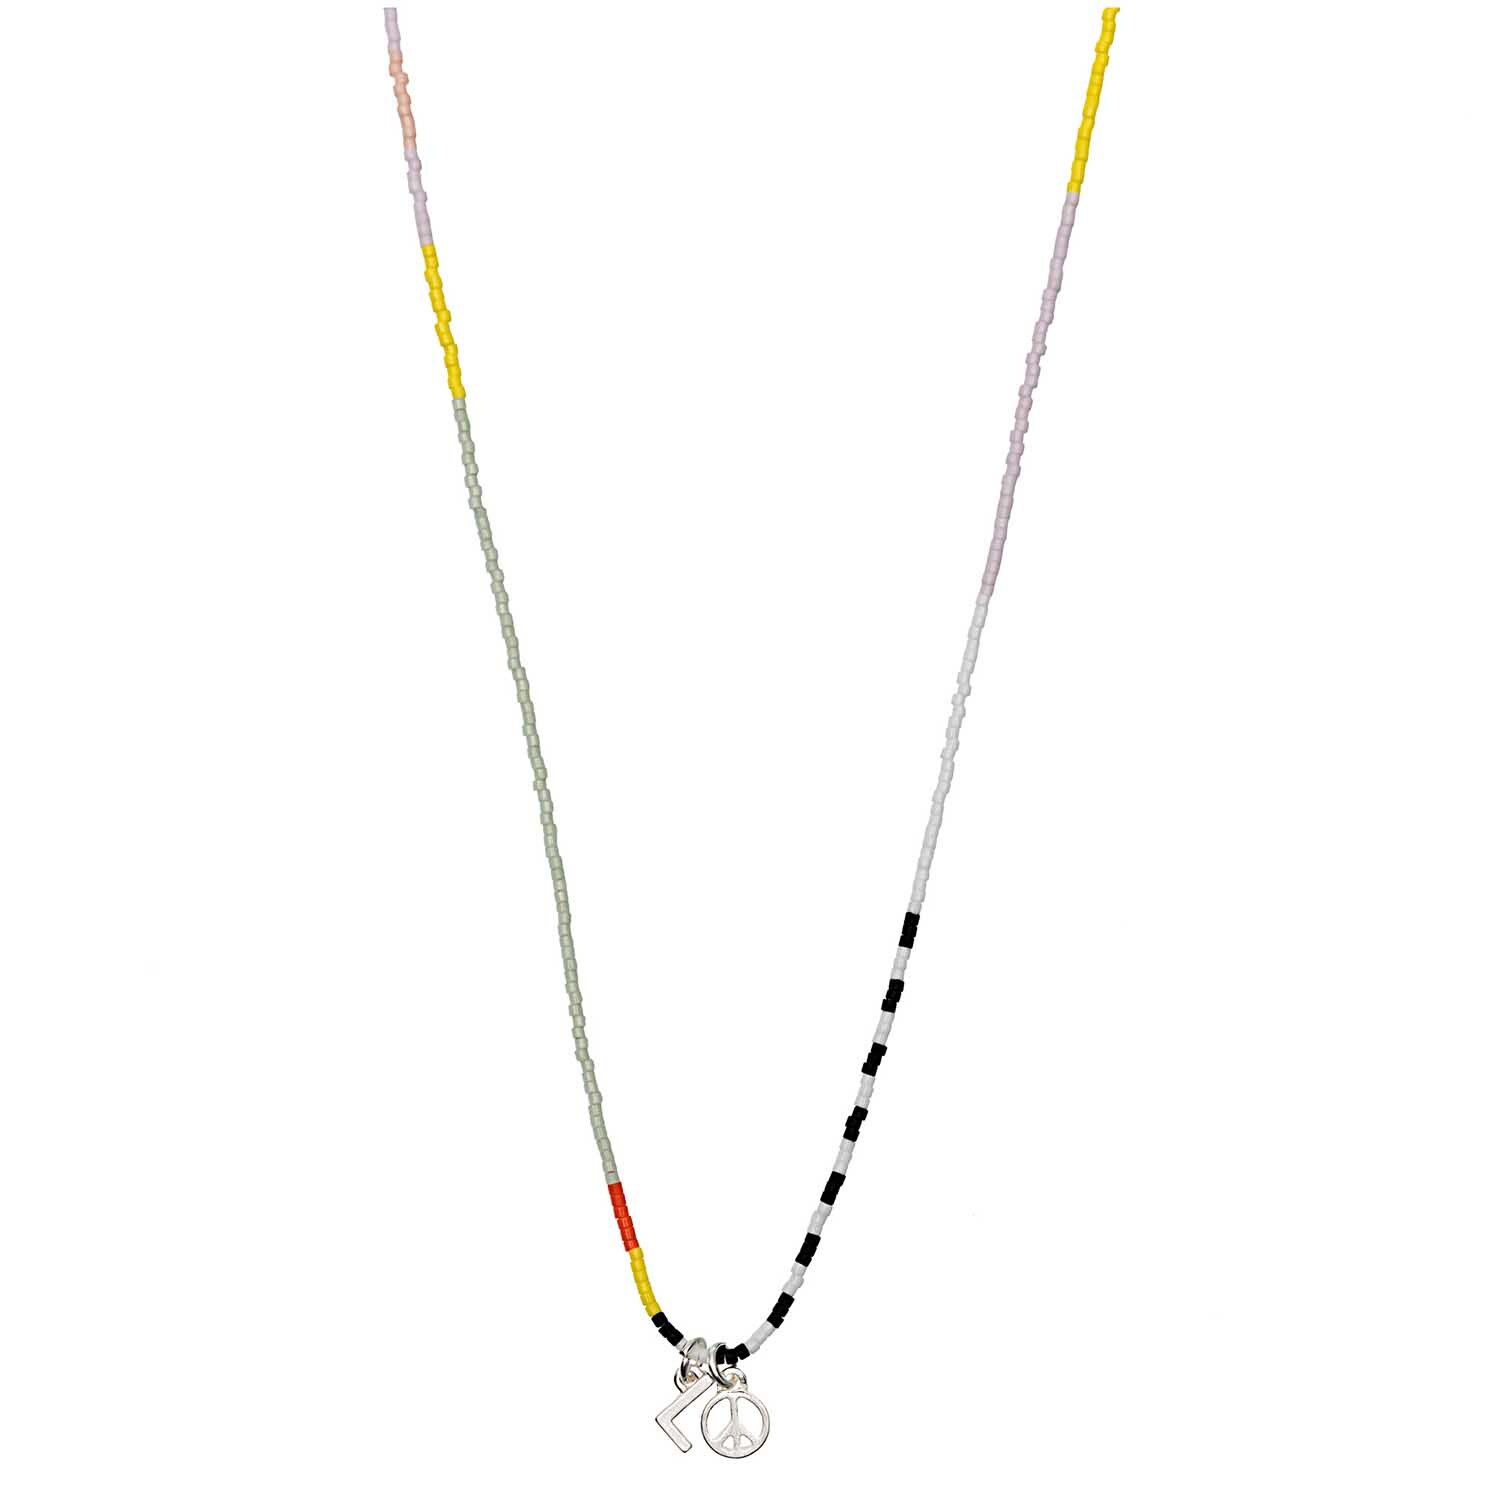 Kette itoshii beads schwarz-weiß-mehrfarbig 65cm